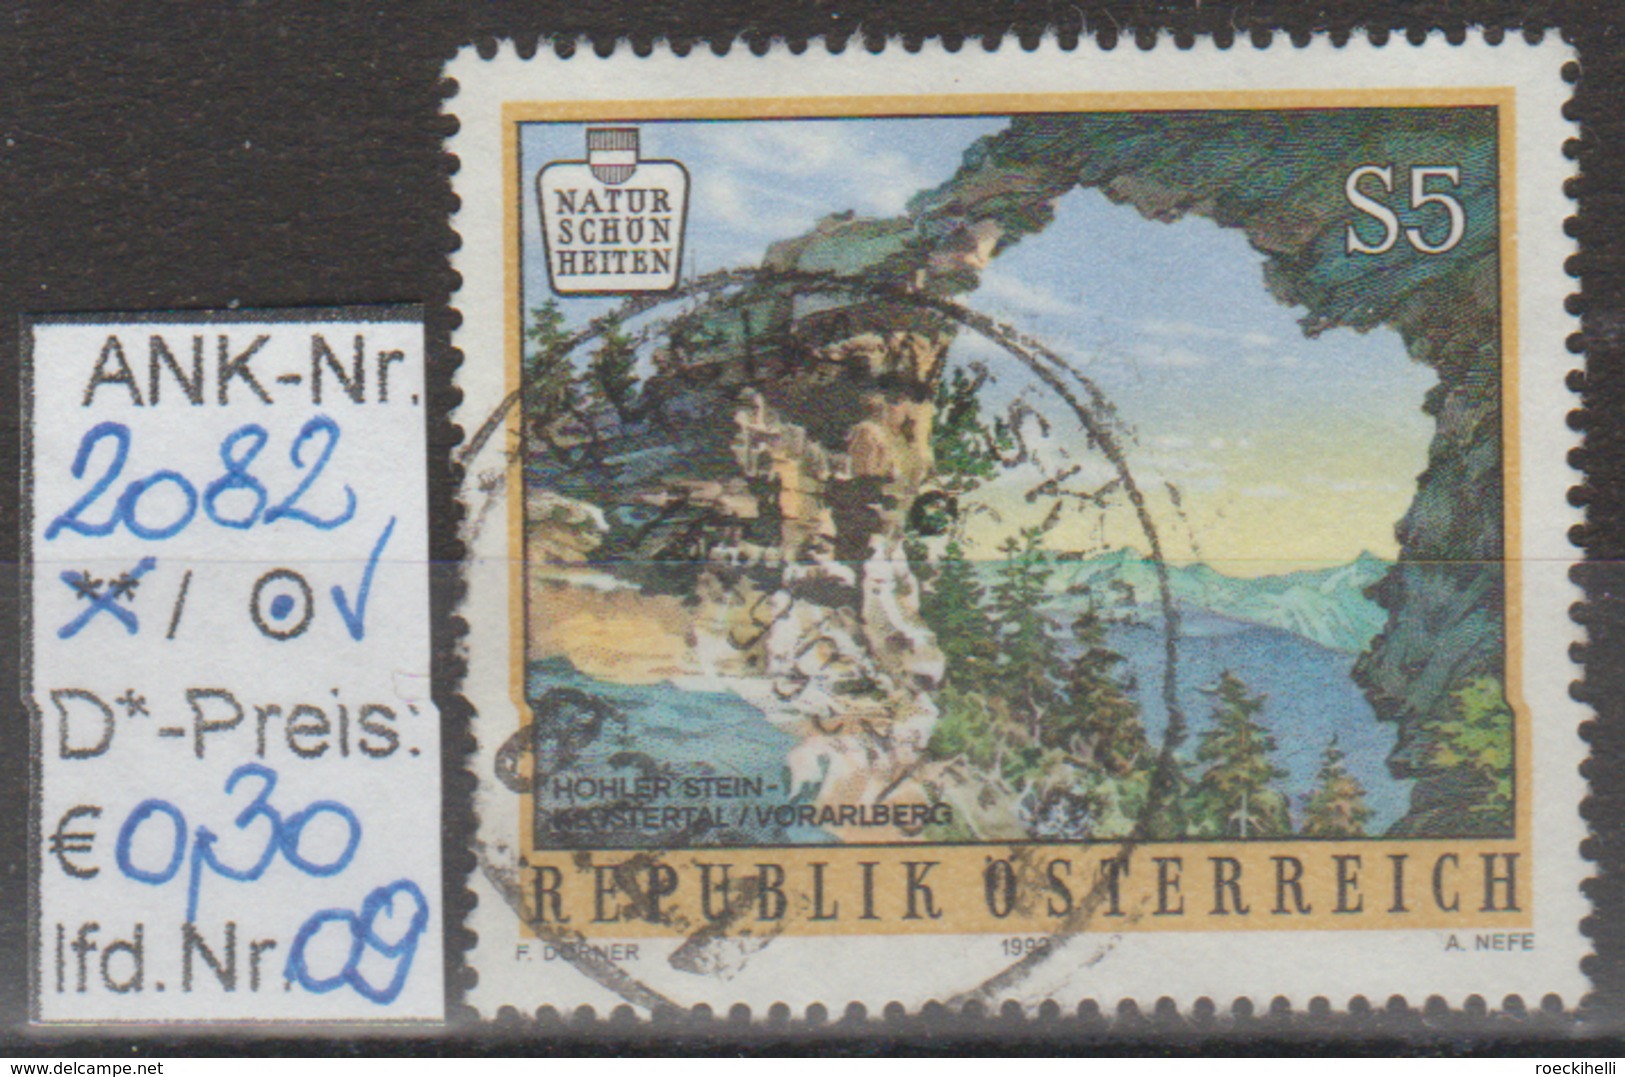 5.2.1992 - SM  "Naturschönheiten in Österreich"  -  o  gestempelt  -  siehe Scan  (2082o 01-11)